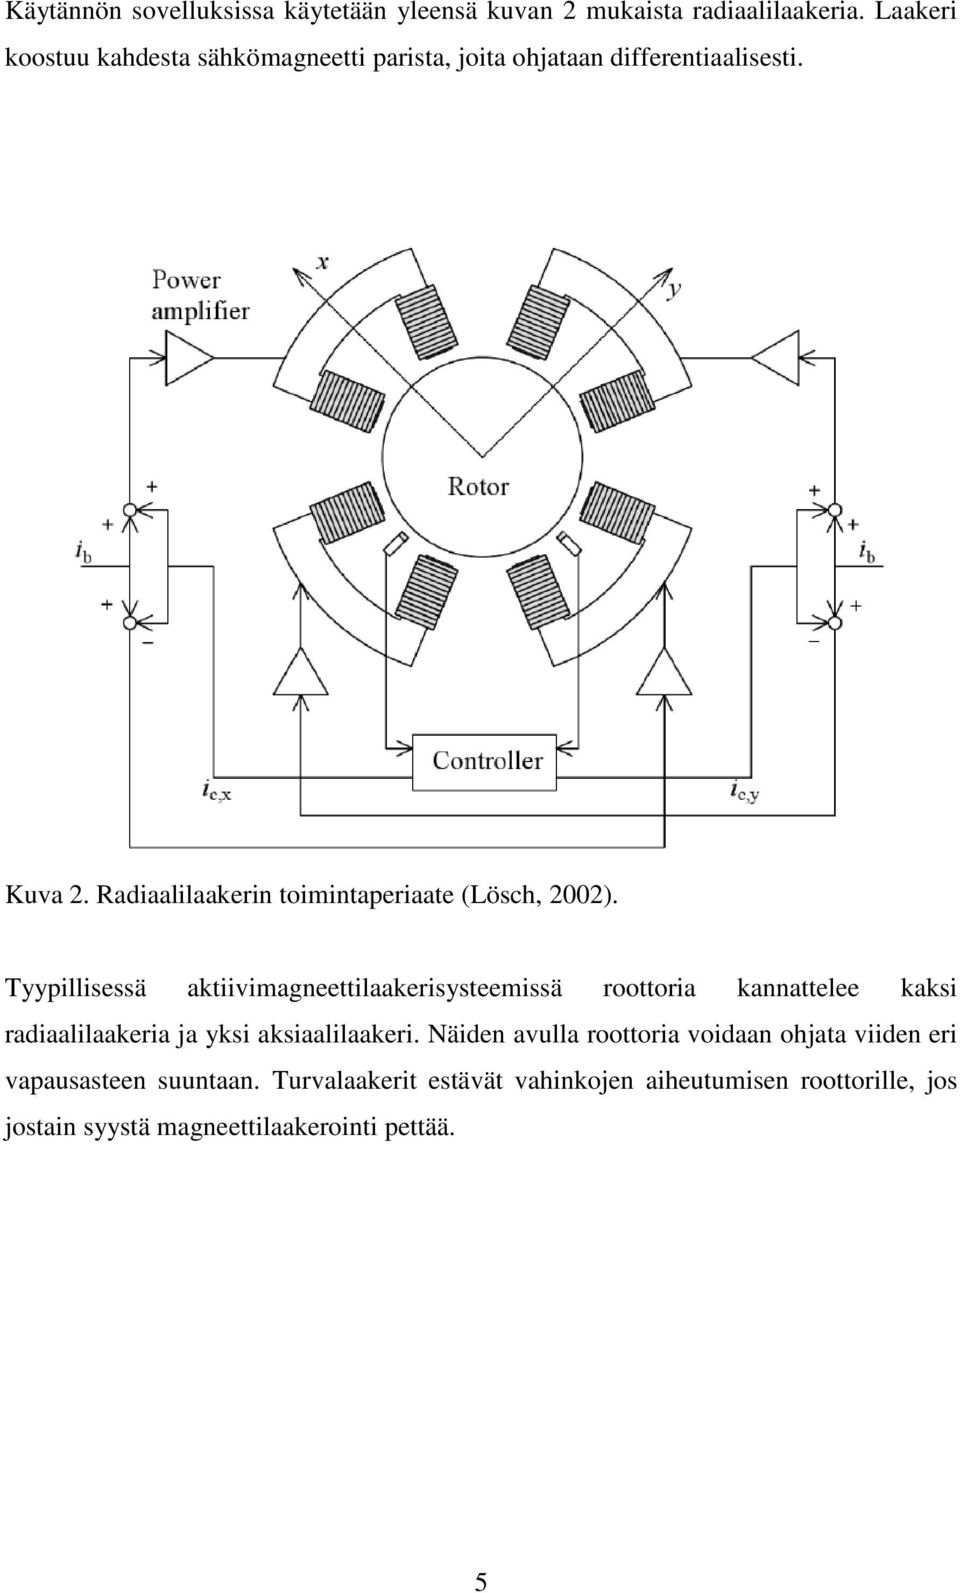 Radiaalilaakerin toimintaperiaate (Lösch, 2002).